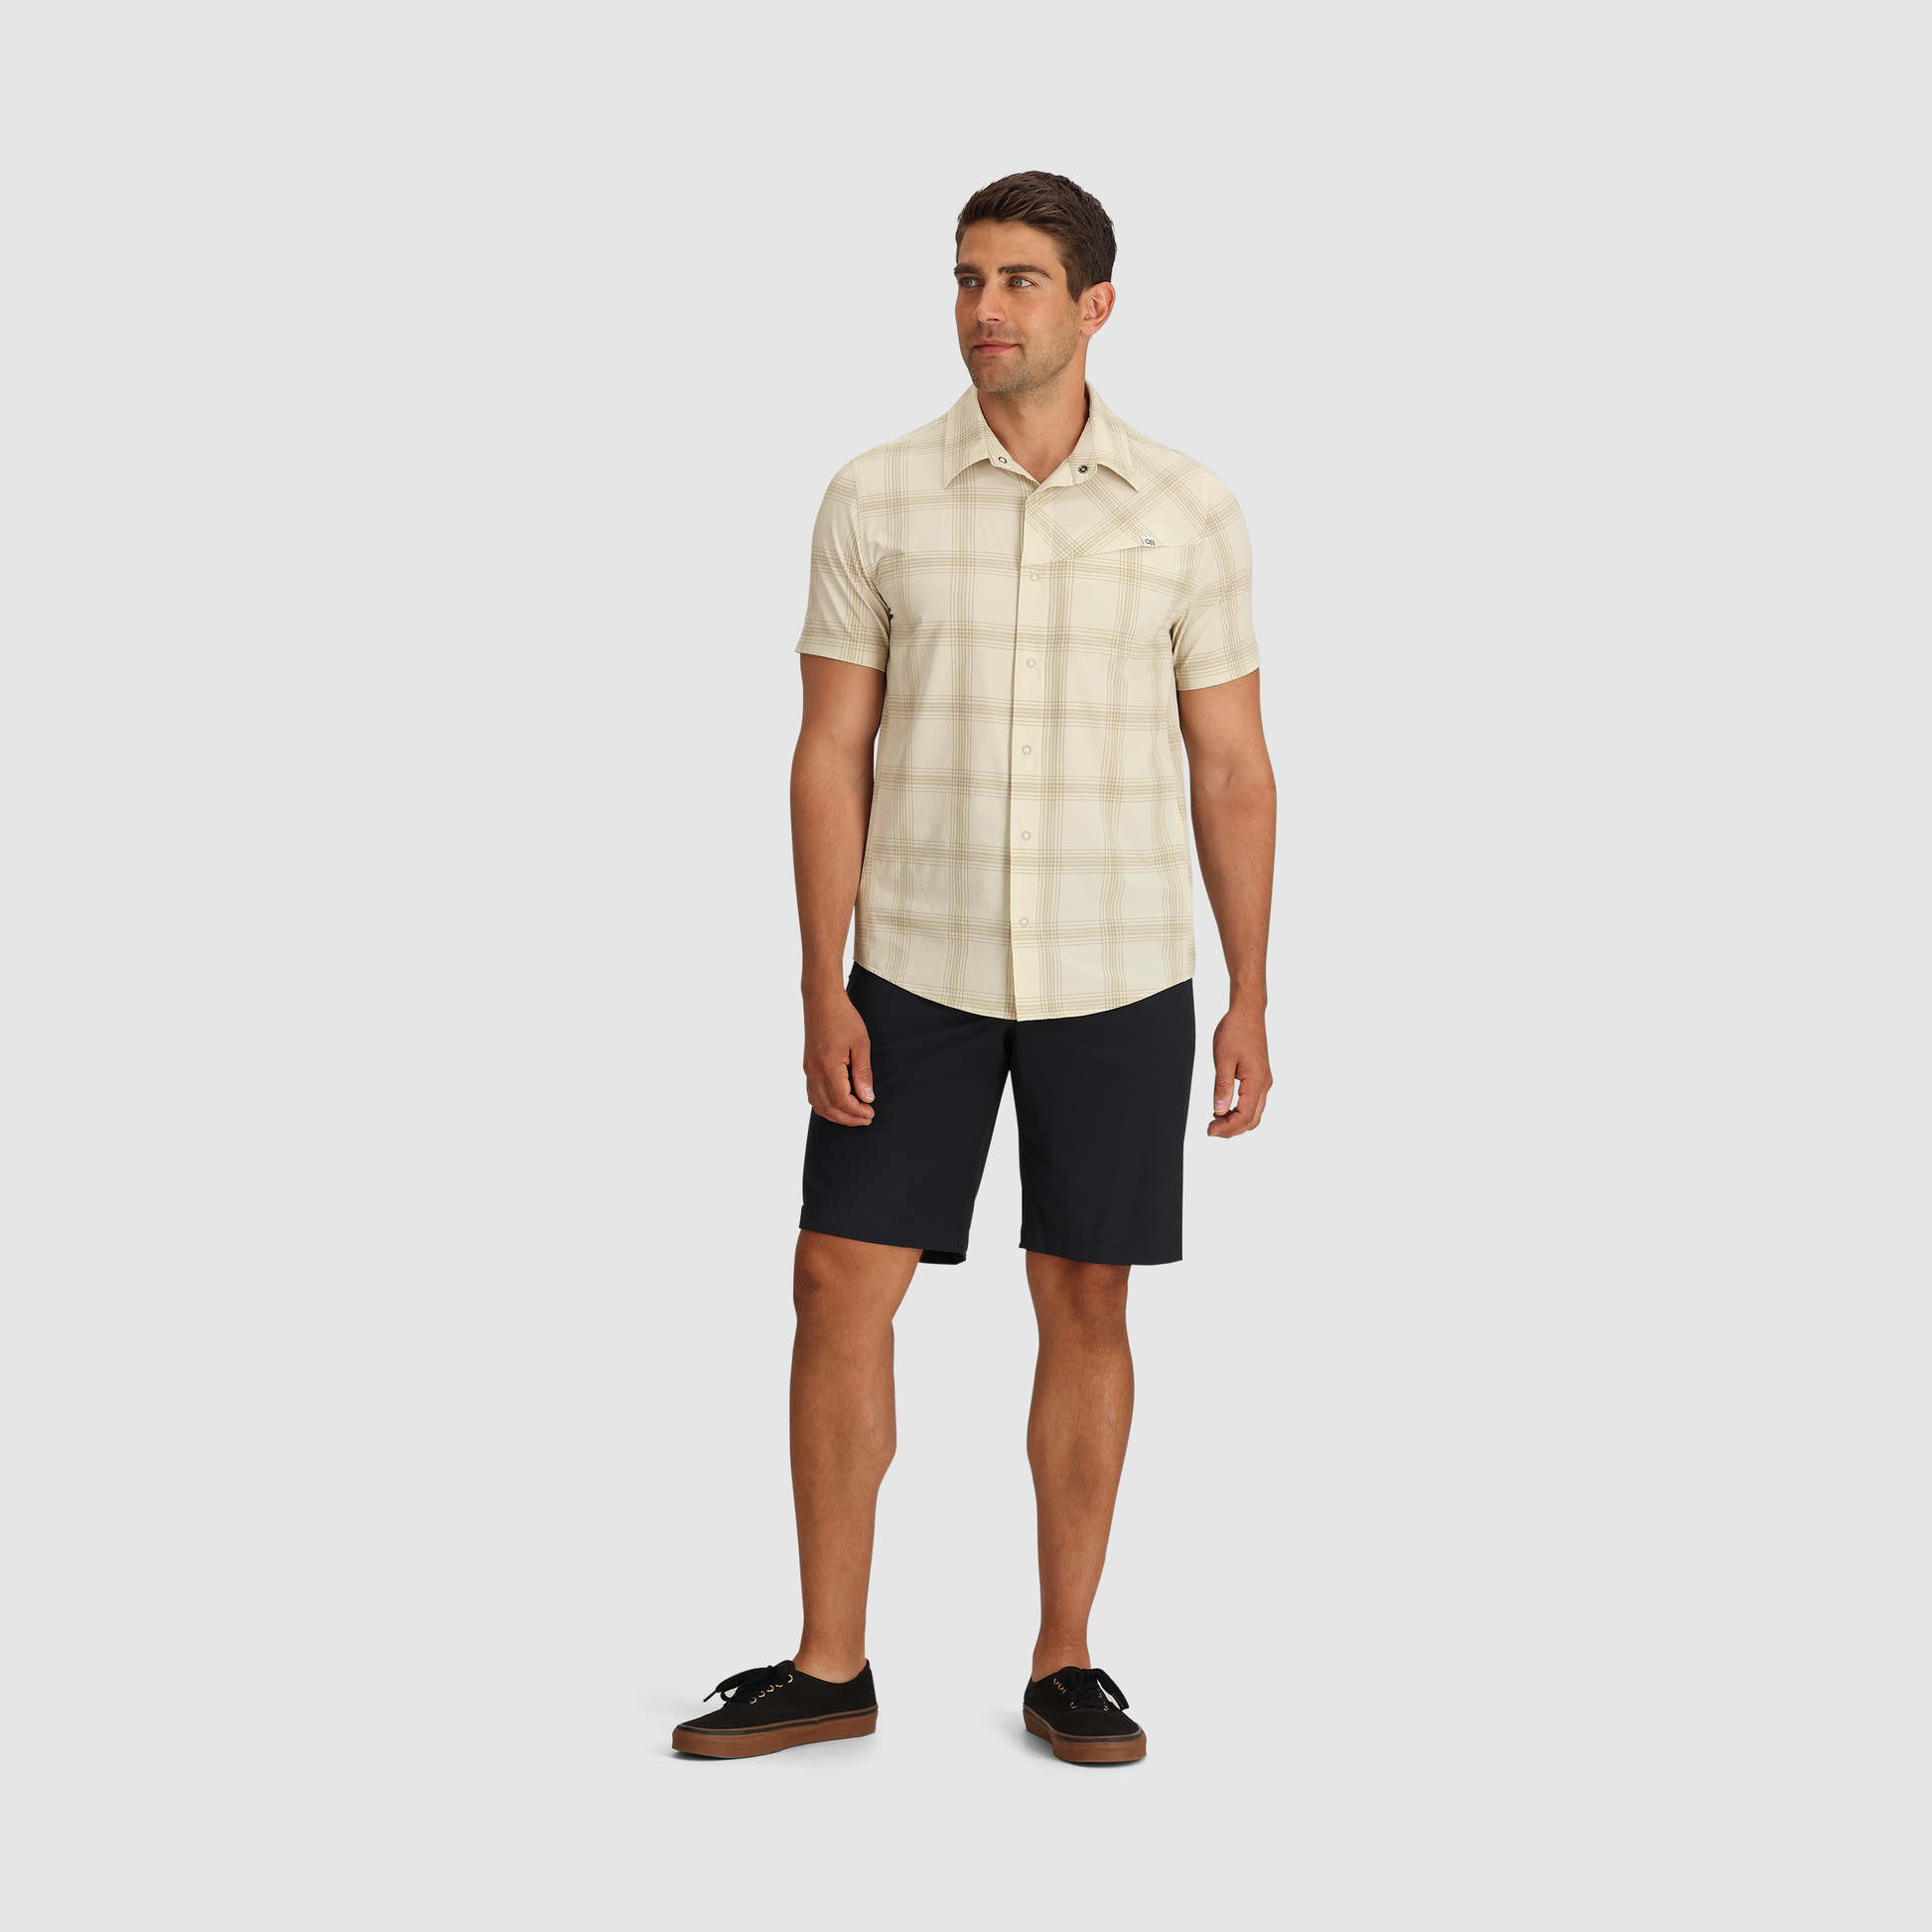 Outdoor Research Astroman Short-Sleeve Sun Shirt - Men's Oyster Plaid, M